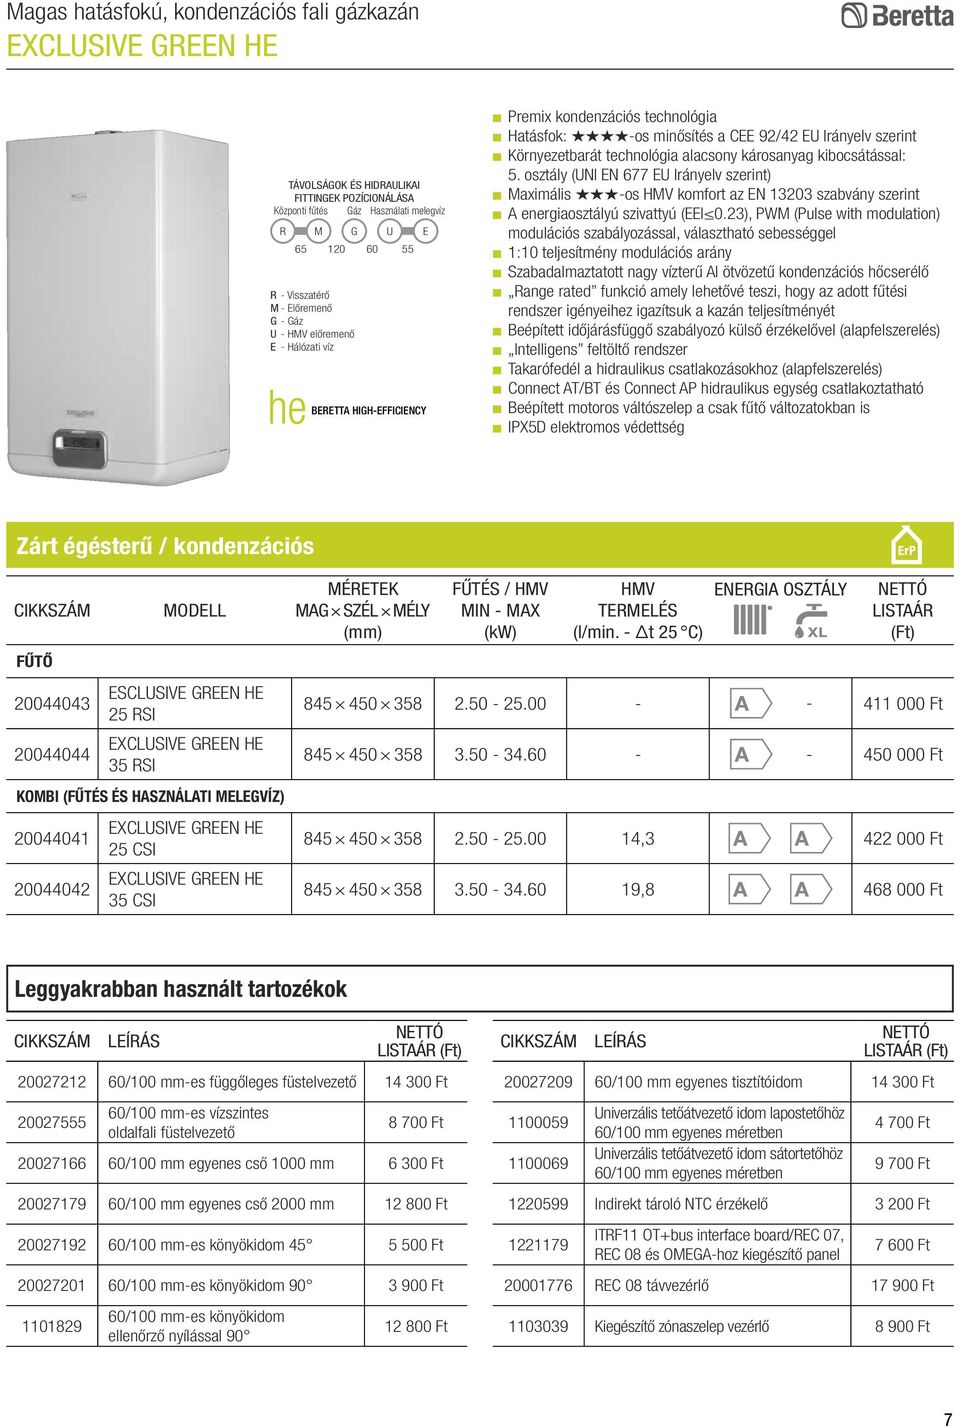 alacsony károsanyag kibocsátással: 5. osztály (UNI EN 677 EU Irányelv szerint) Maximális -os HMV komfort az EN 13203 szabvány szerint A energiaosztályú szivattyú (EEI 0.